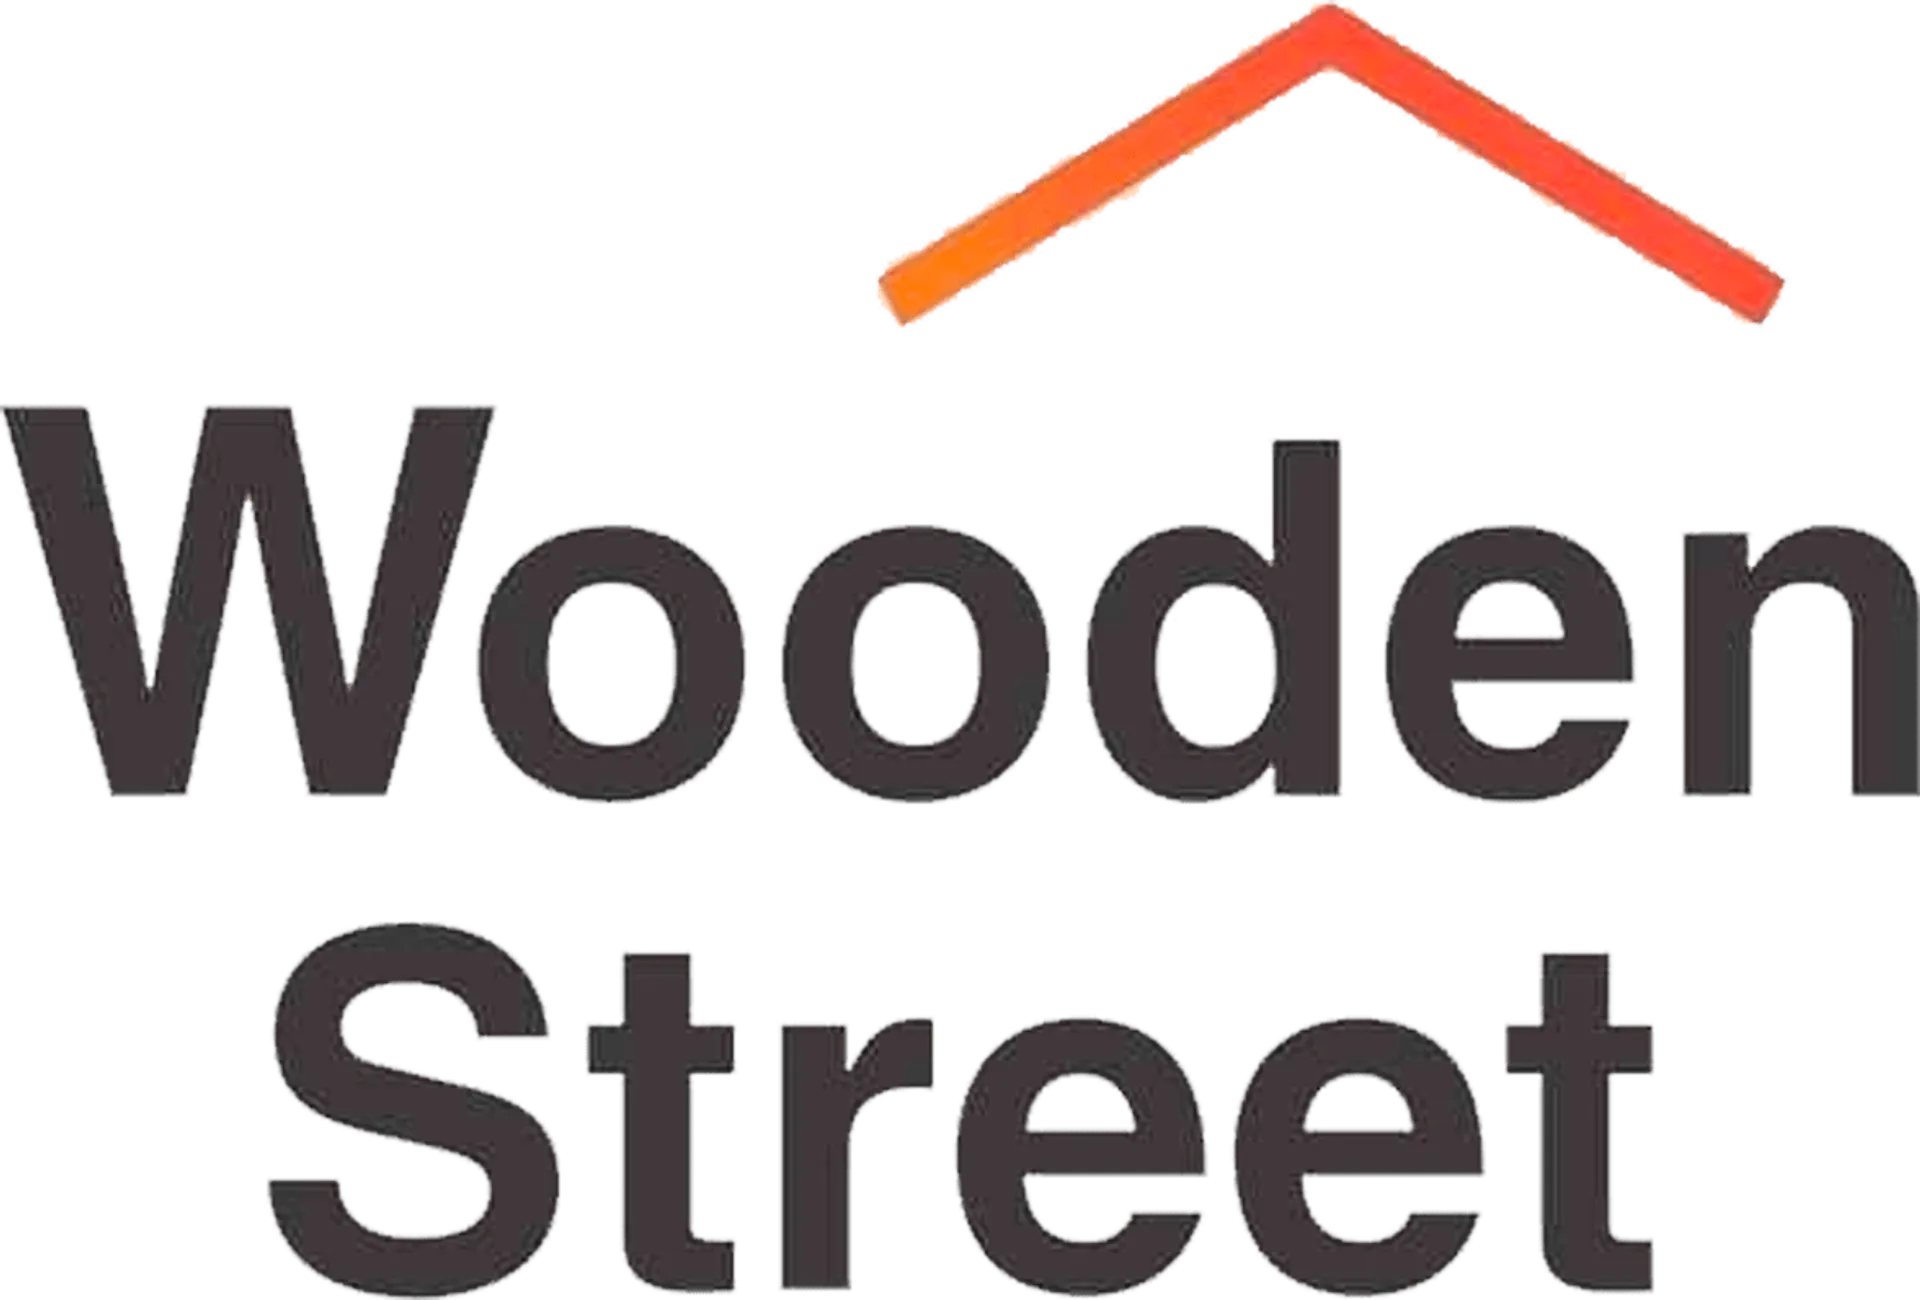 WOODEN STREET logo. Current catalogue